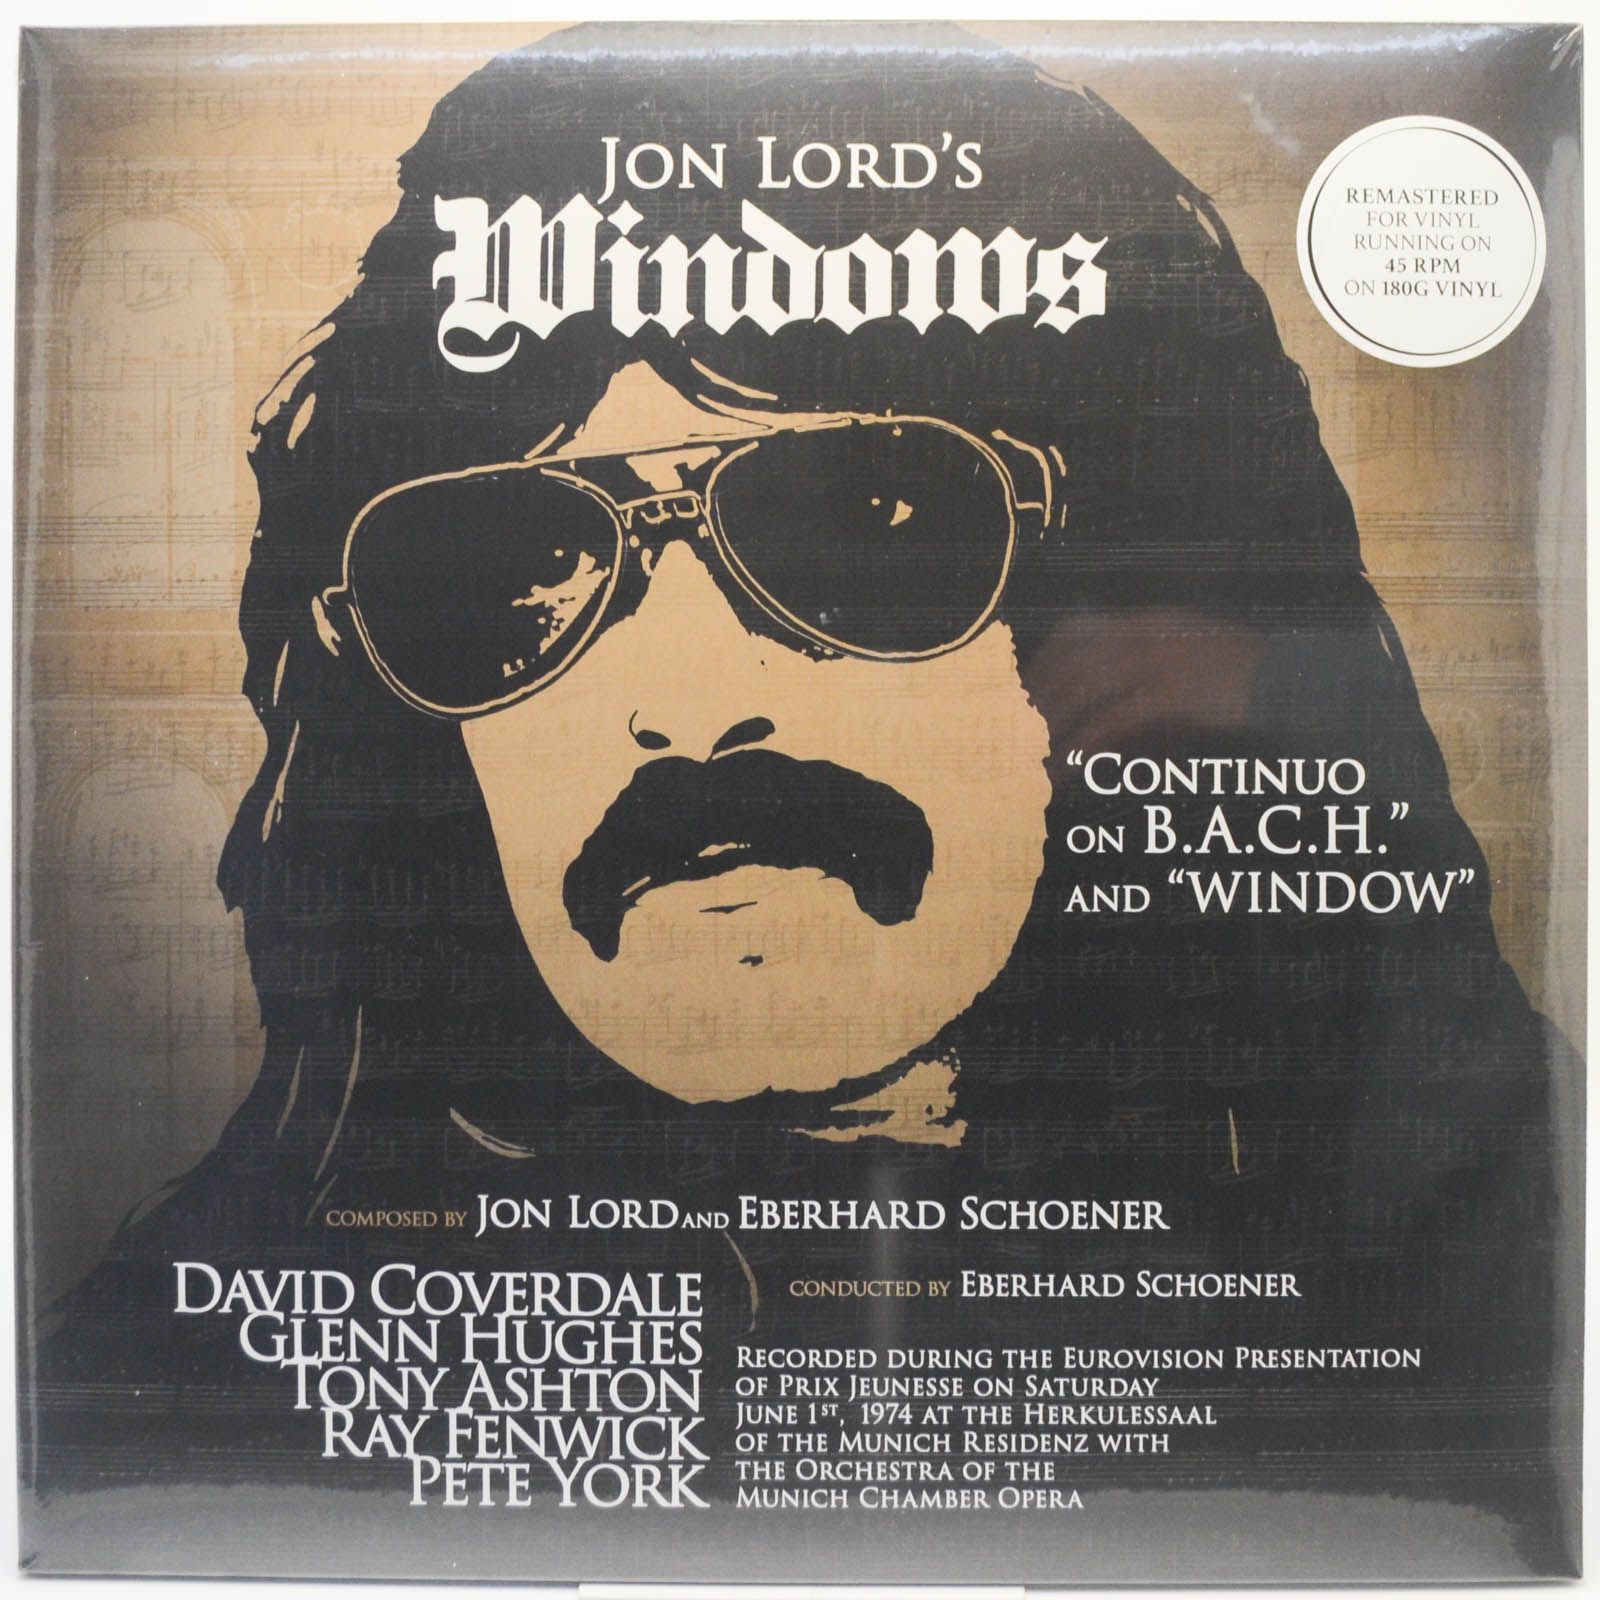 Jon Lord - Windows (2LP), 6780 ₽ купить виниловую пластинку с доставкой